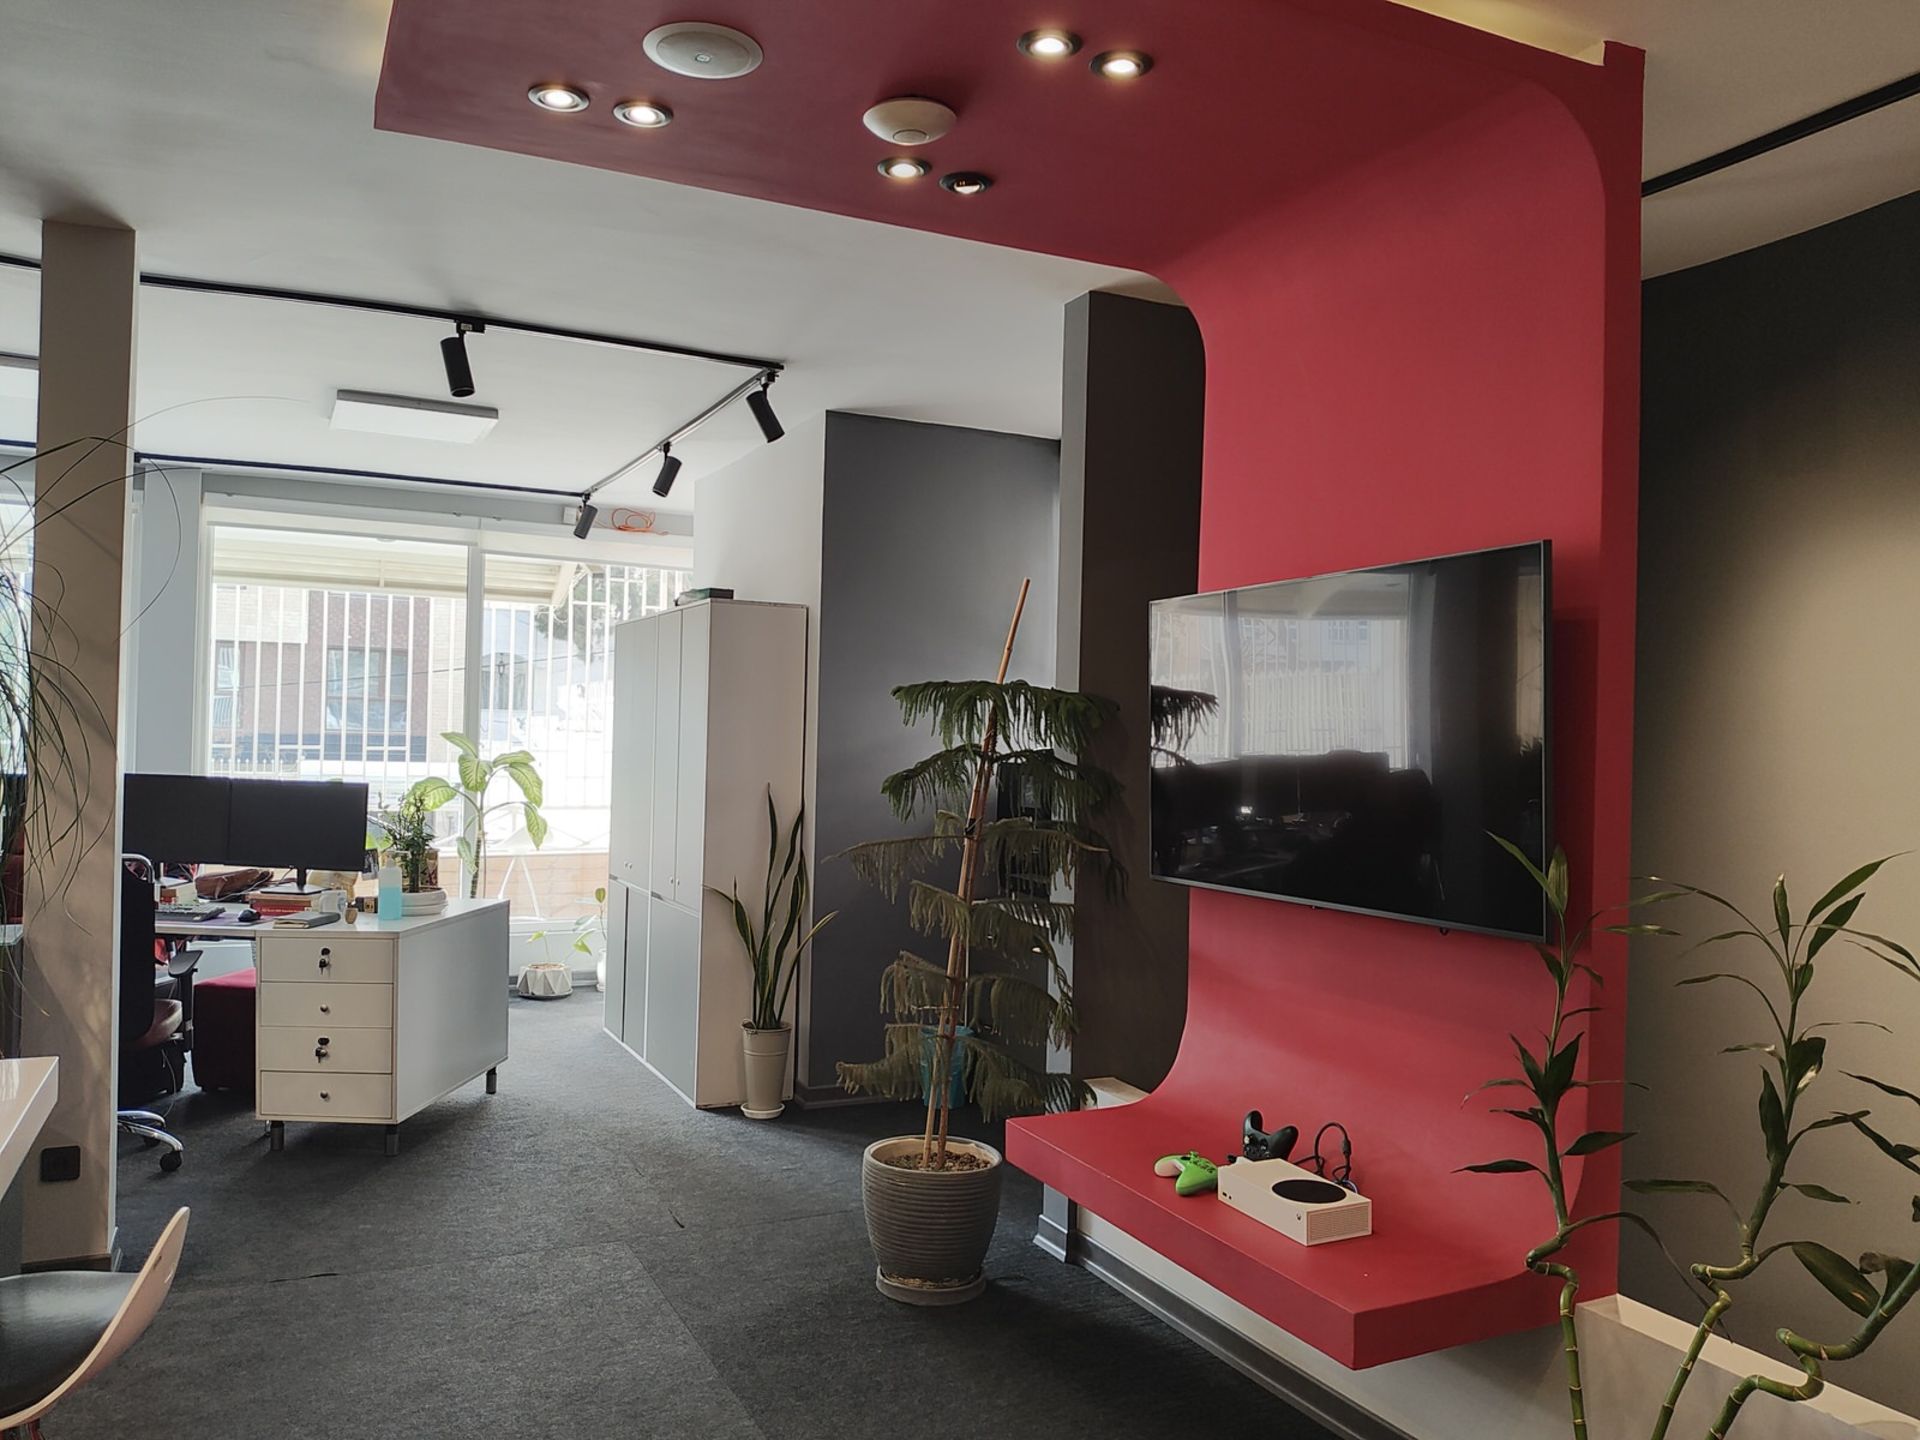 نمونه عکس ریزر ۴۰ اولترا از محیط داخلی یک دفتر کار با یک تلویزیون روی دیوار قرمز رنگ و پنجره روشن رو به حیاط